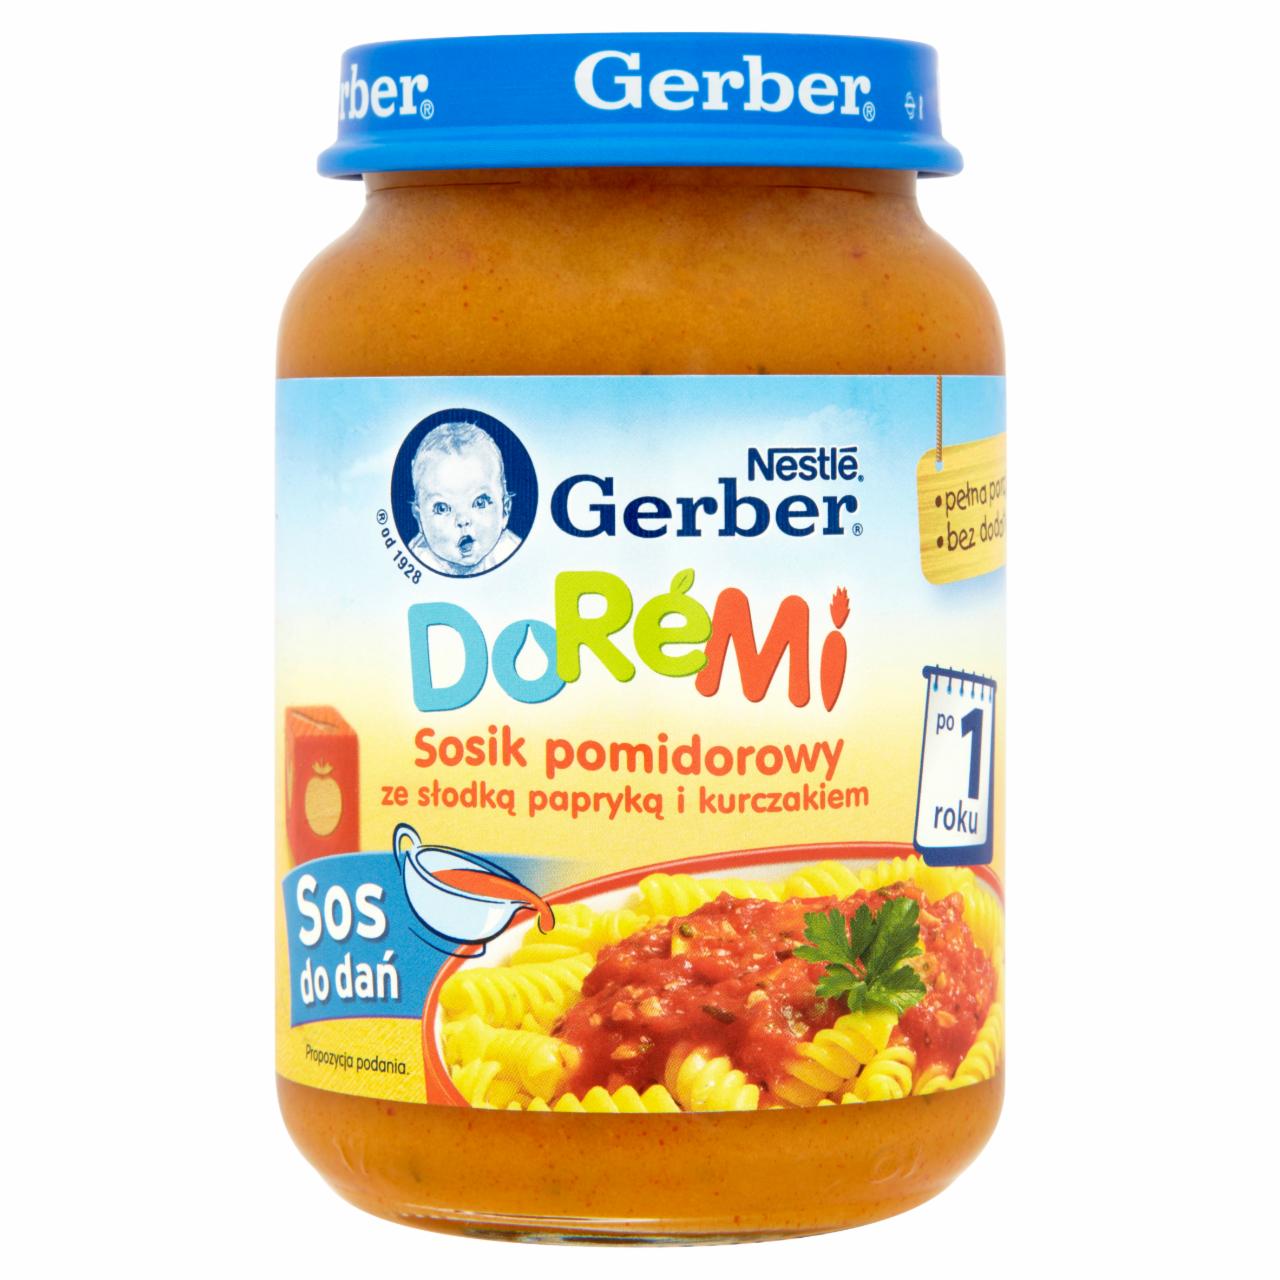 Zdjęcia - Gerber DoReMi Sos do dań Sosik pomidorowy ze słodką papryką i kurczakiem po 1 roku 190 g